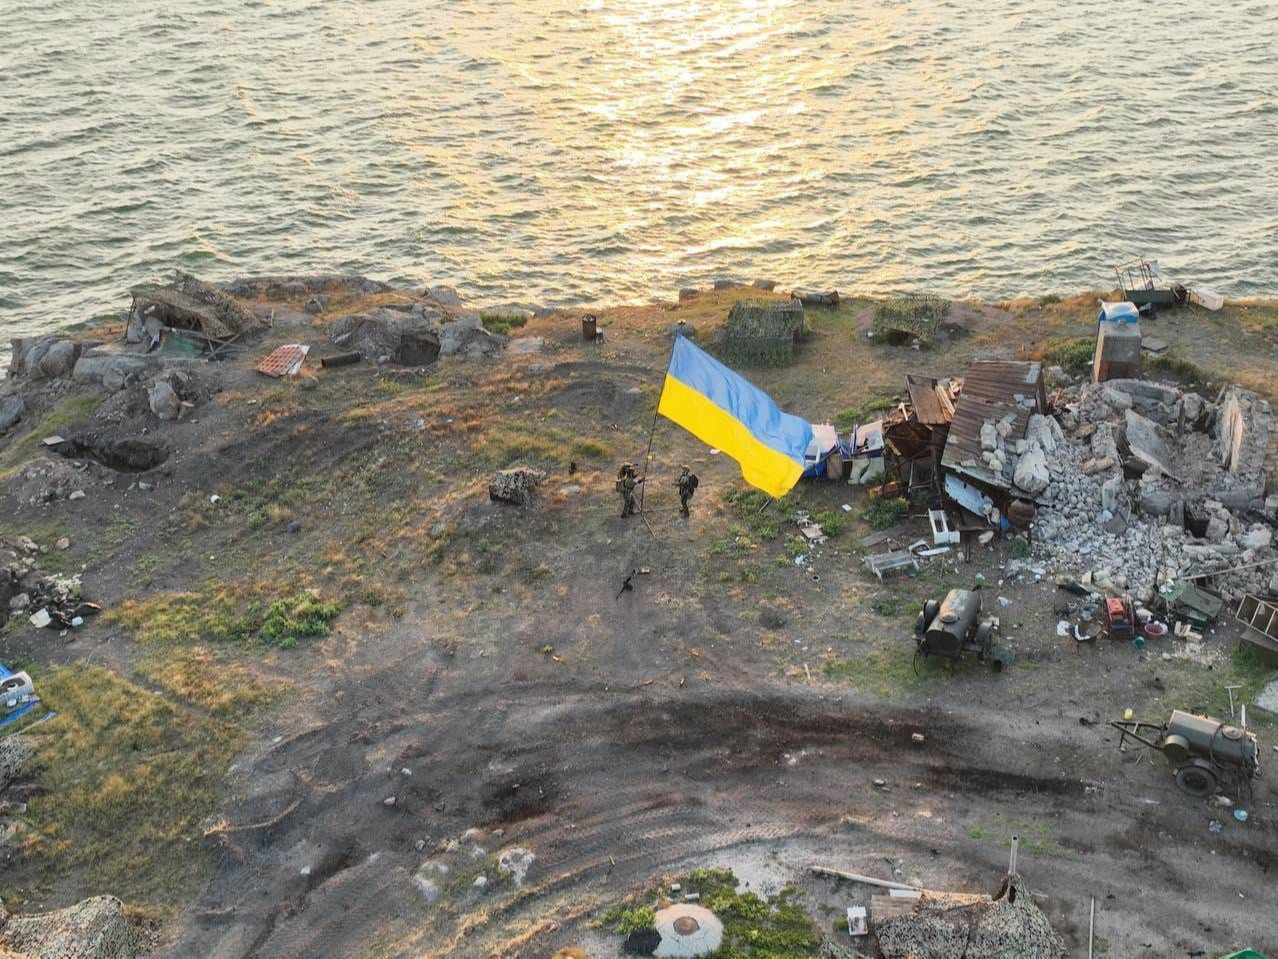 ВИДЕО: Украины арми Могойт арлыг эргүүлэн авснаа зарлаж, далбаагаа мандуулжээ